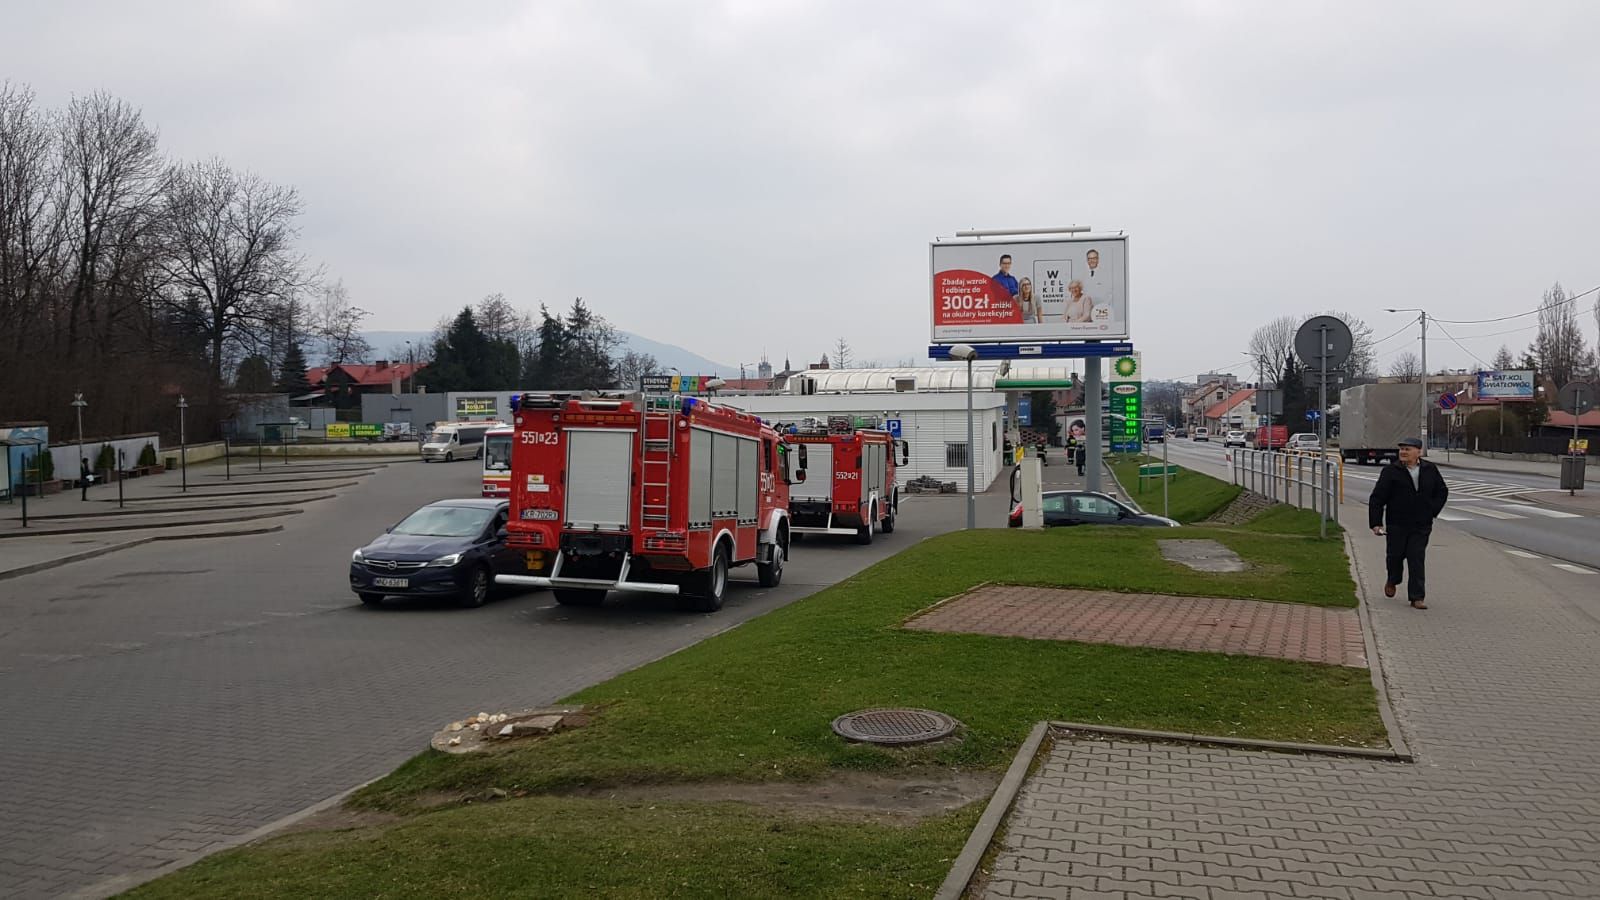 Wyciek gazu z samochodu na stacji [AKTUALIZACJA] mamNewsa.pl